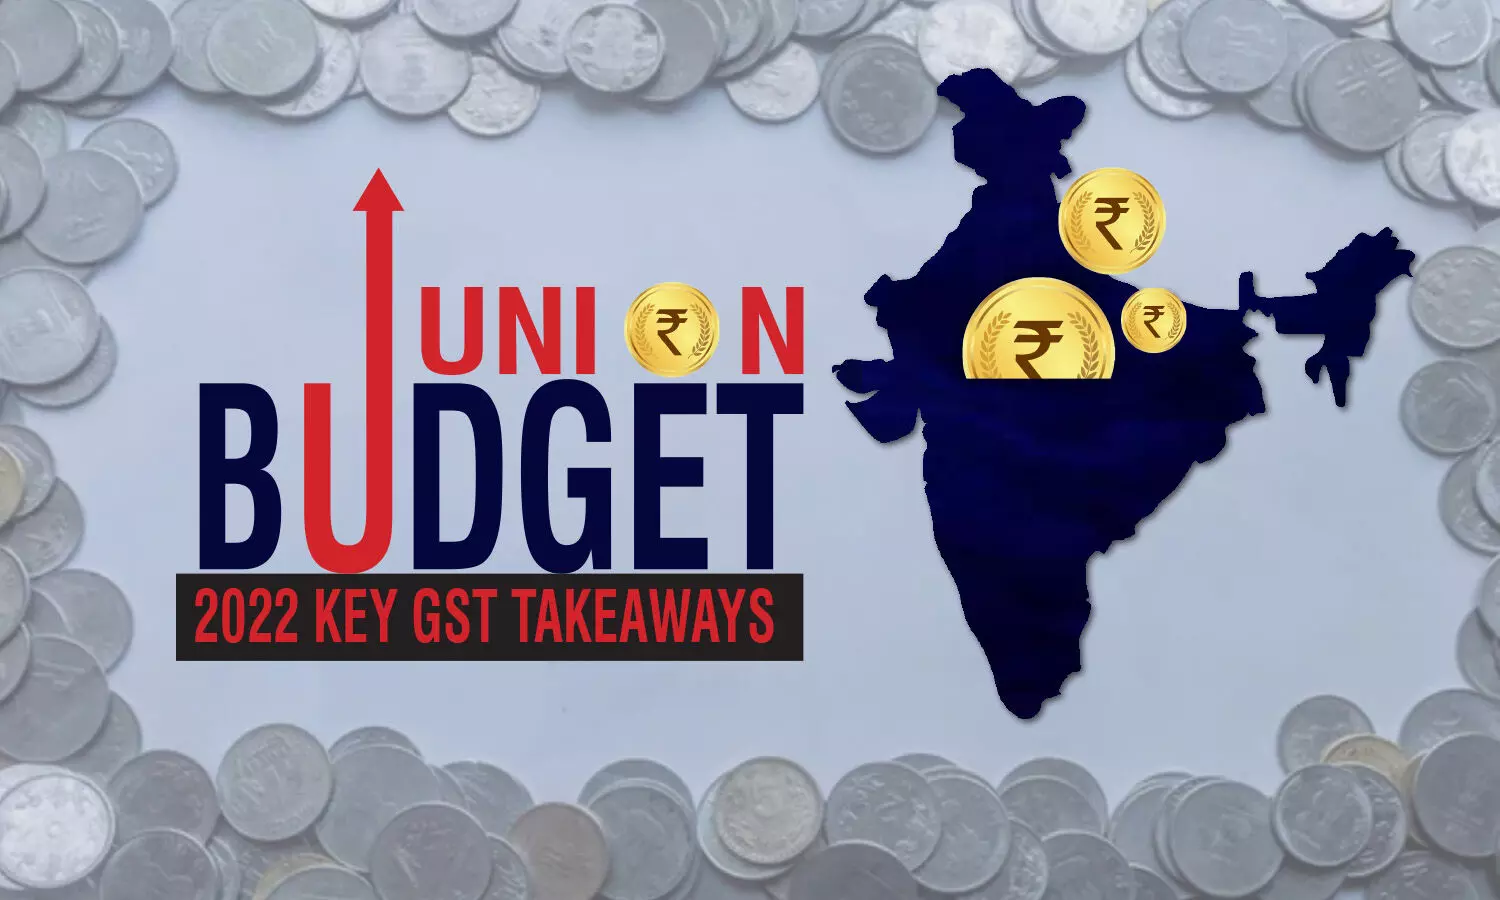 Union Budget 2022: Key GST Takeaways